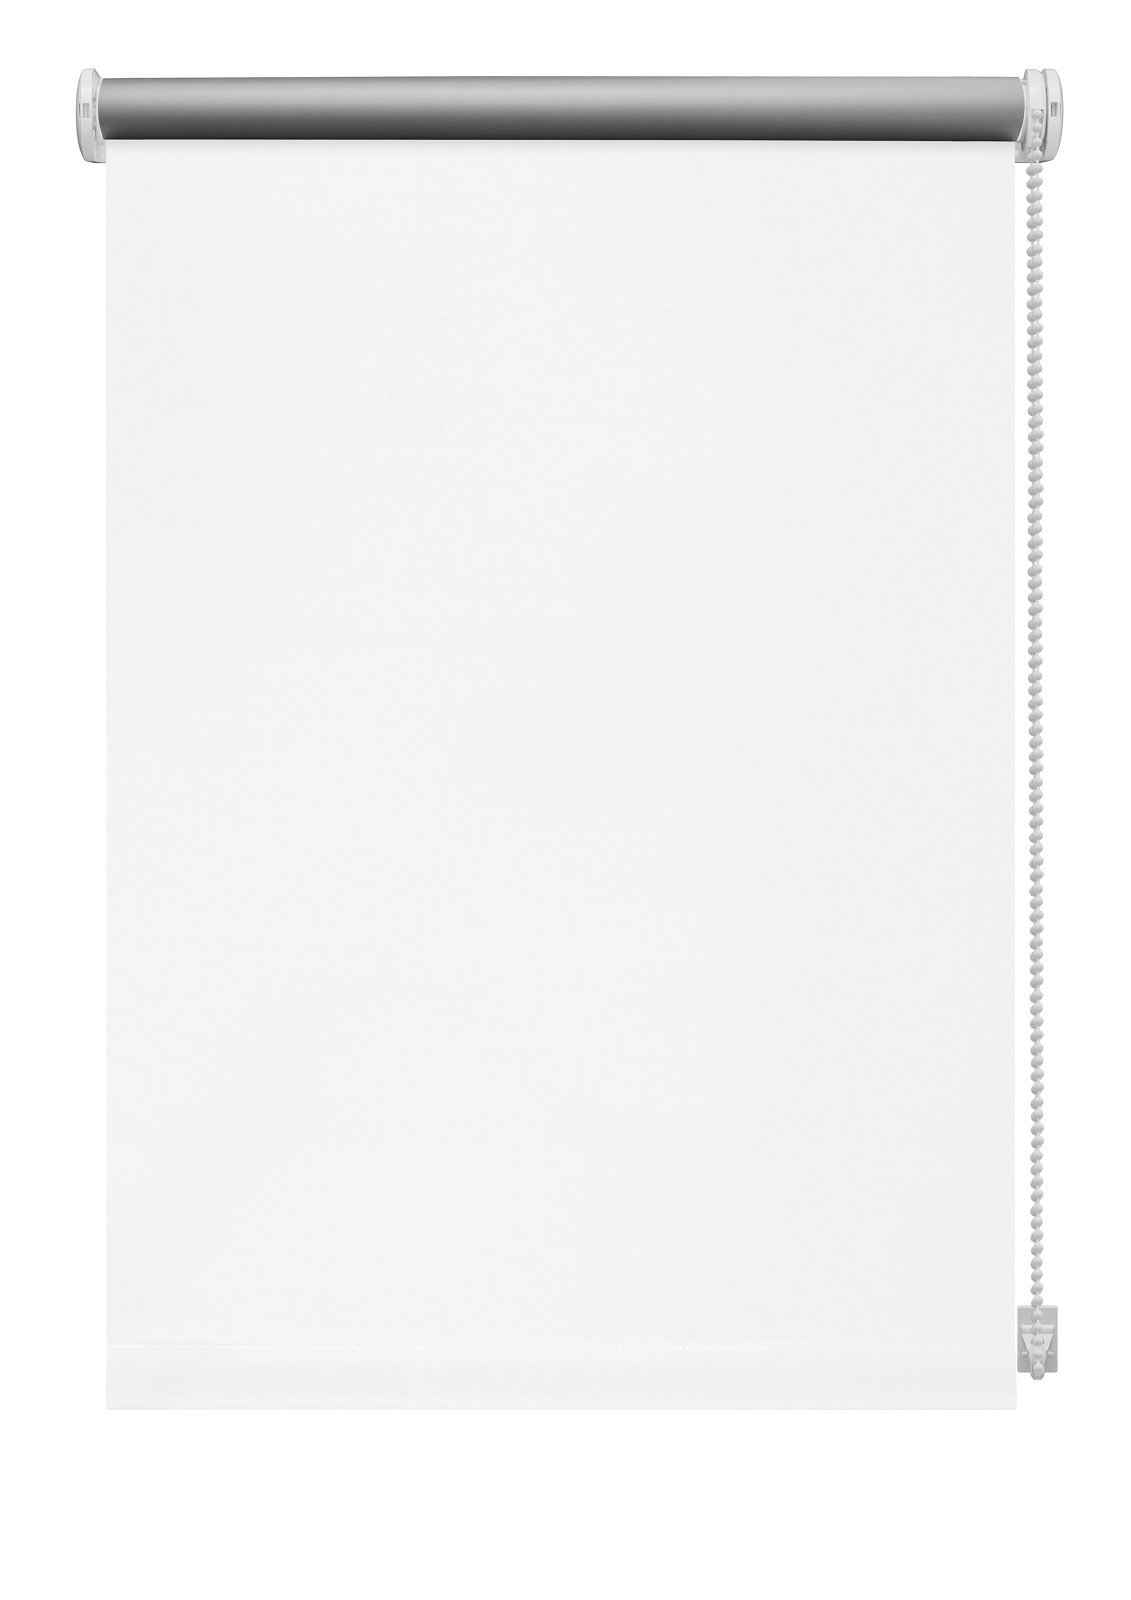 Klasikinė ritininė užuolaida THERMO 905, baltos sp., 140 x 210 cm - 2